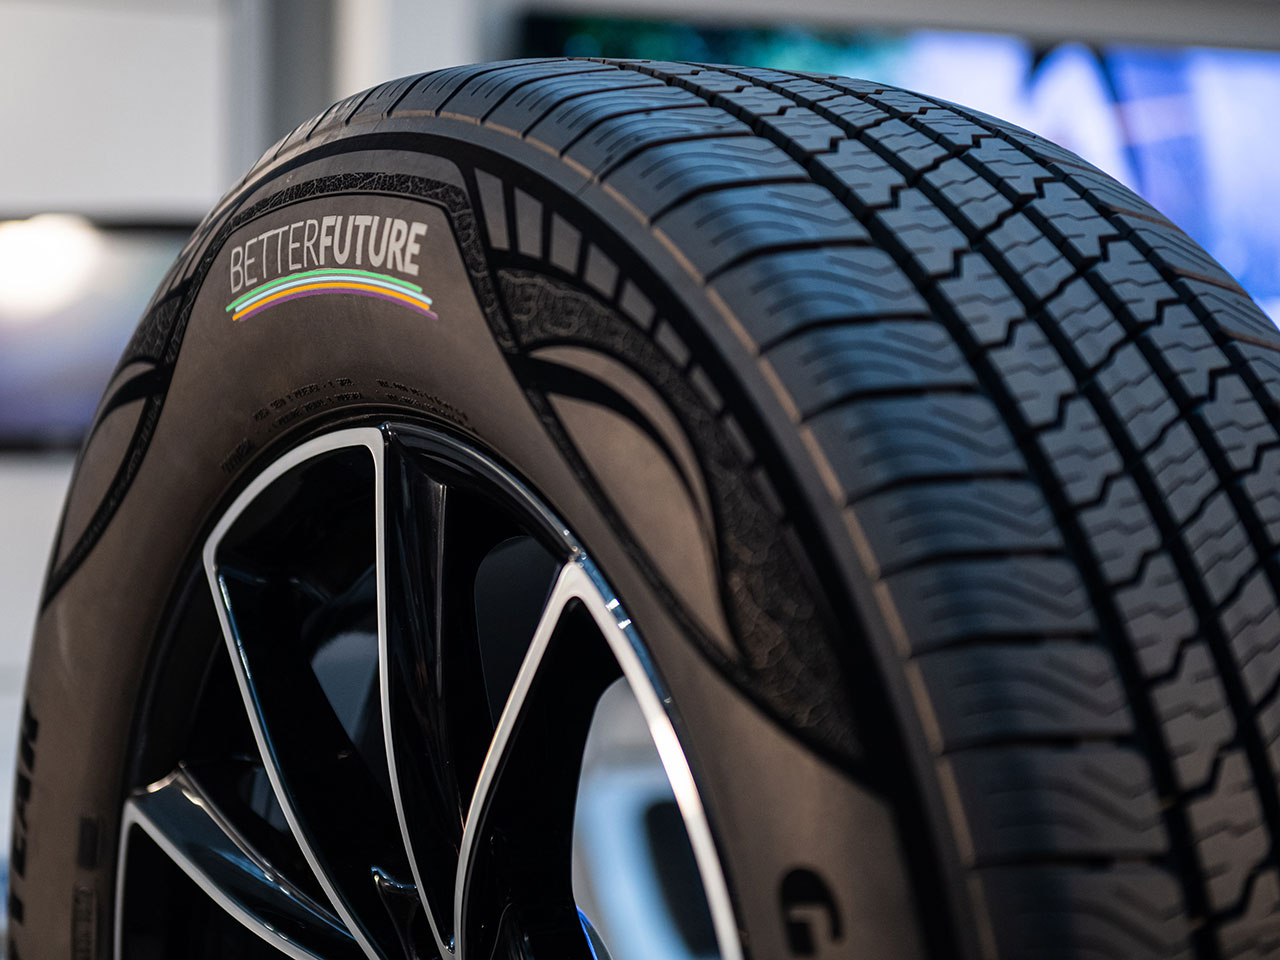 Detalhe do pneu sustentvel apresentado nesta semana pela Goodyear